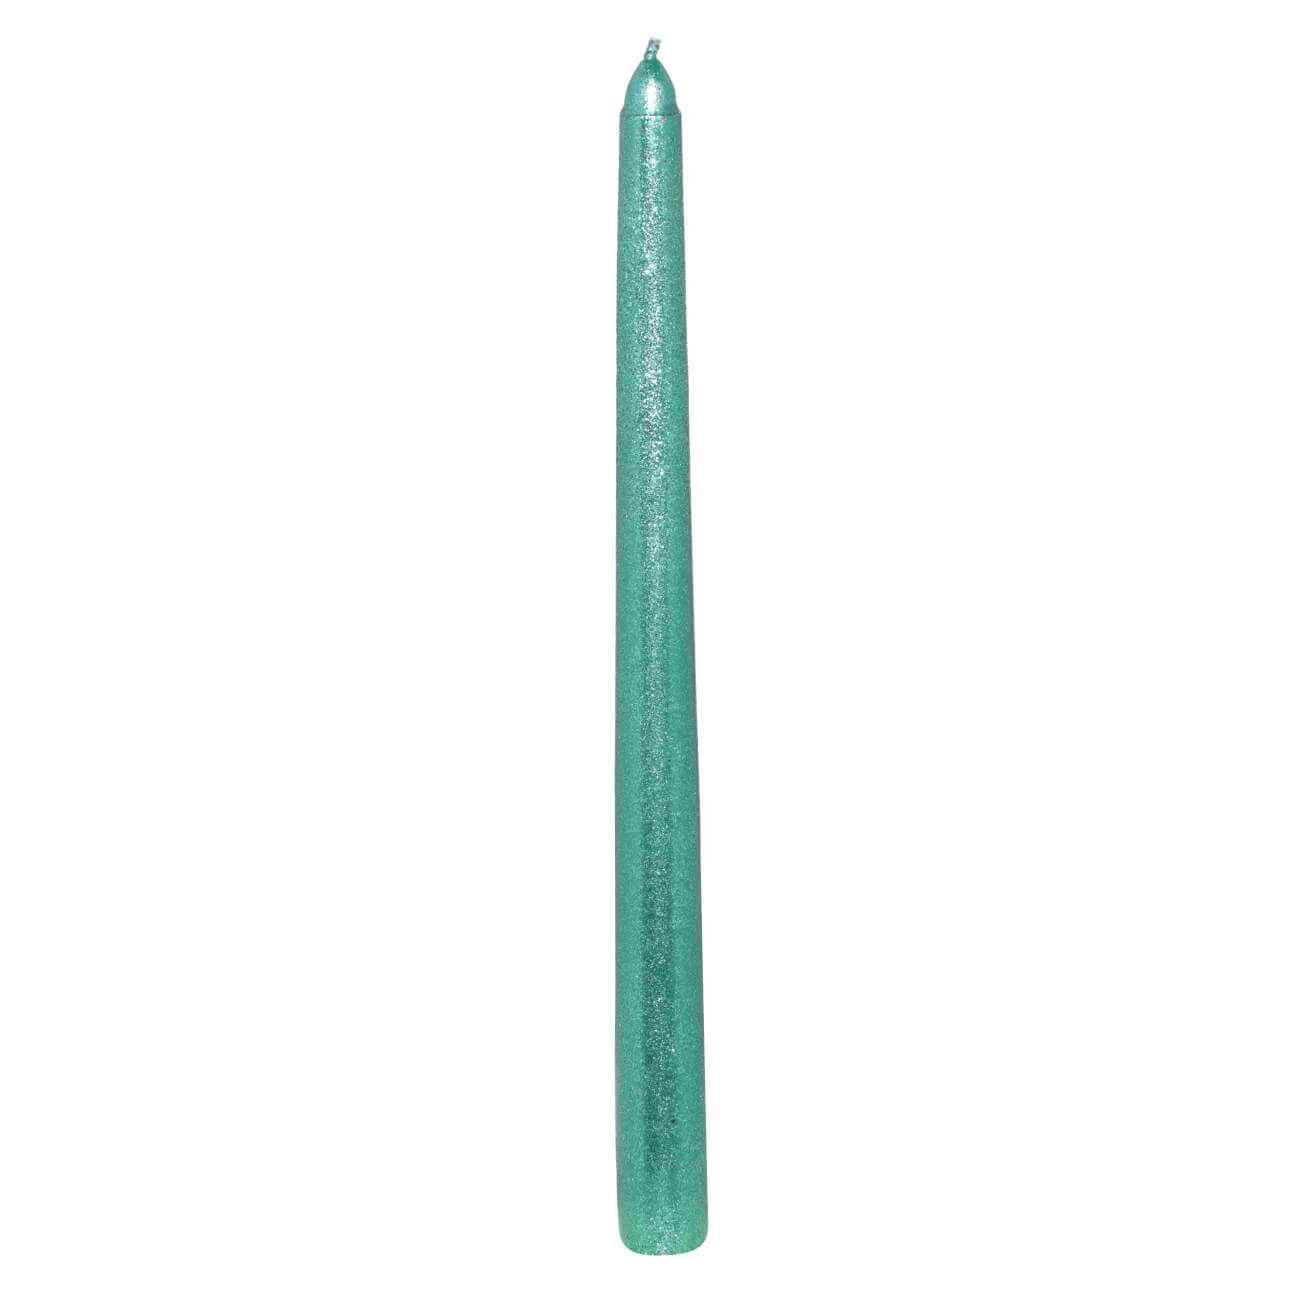 Свеча, 25 см, тонкая, с блестками, темно-зеленая, Sparkly candle изображение № 1